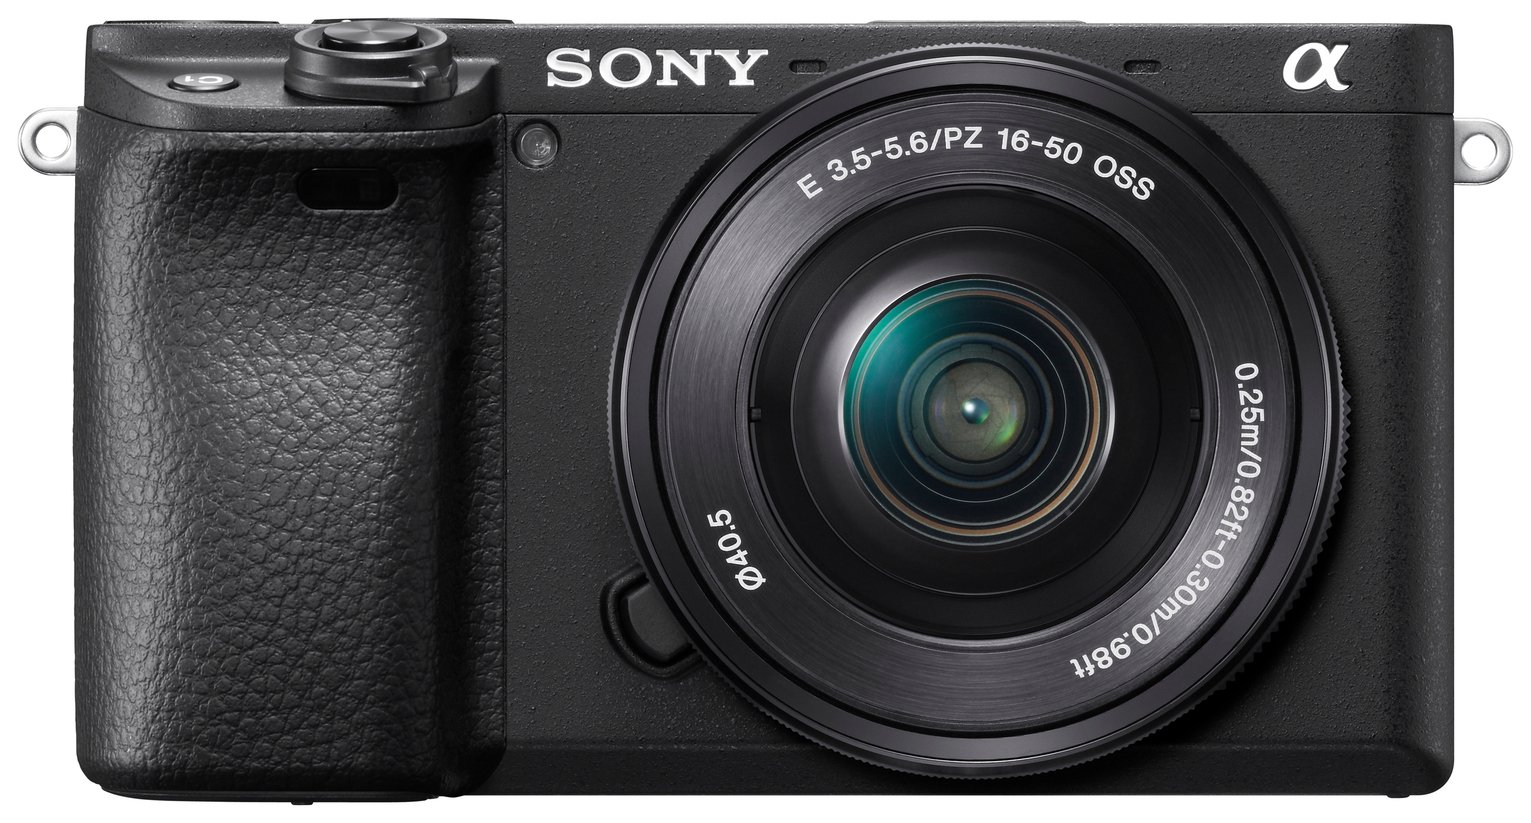 Sony 6400 E Mount Camera with SEP1650 Lens